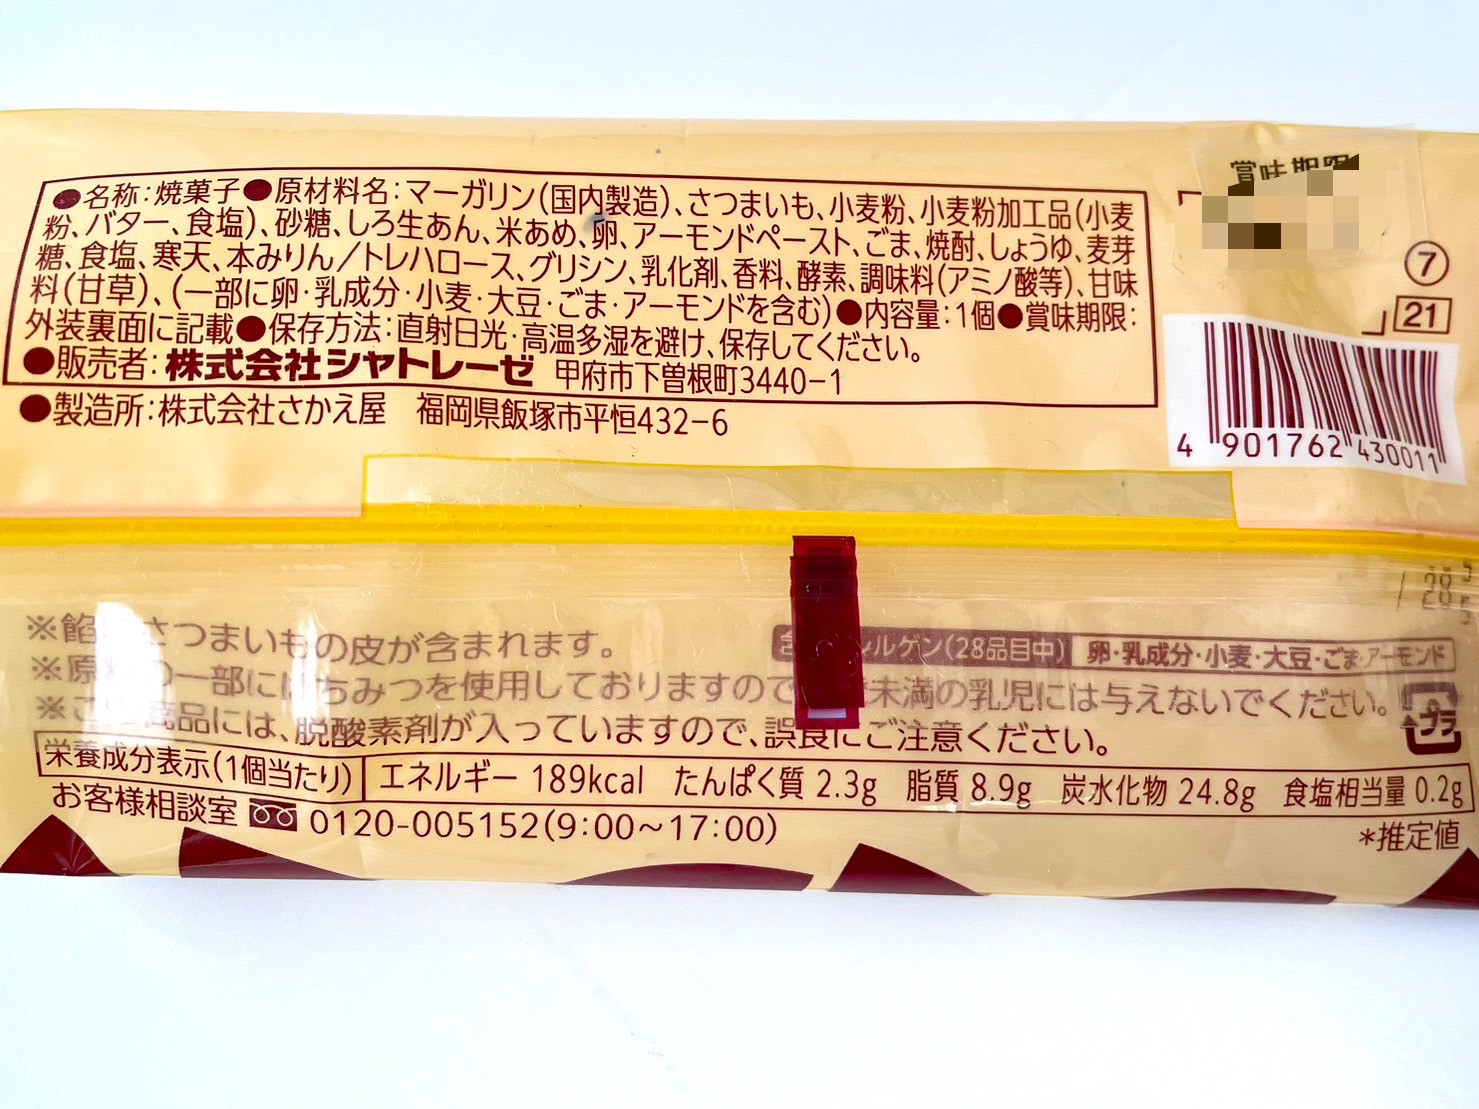 熊本県産ゴールドスイート 焼き芋パイ
パッケージ裏情報